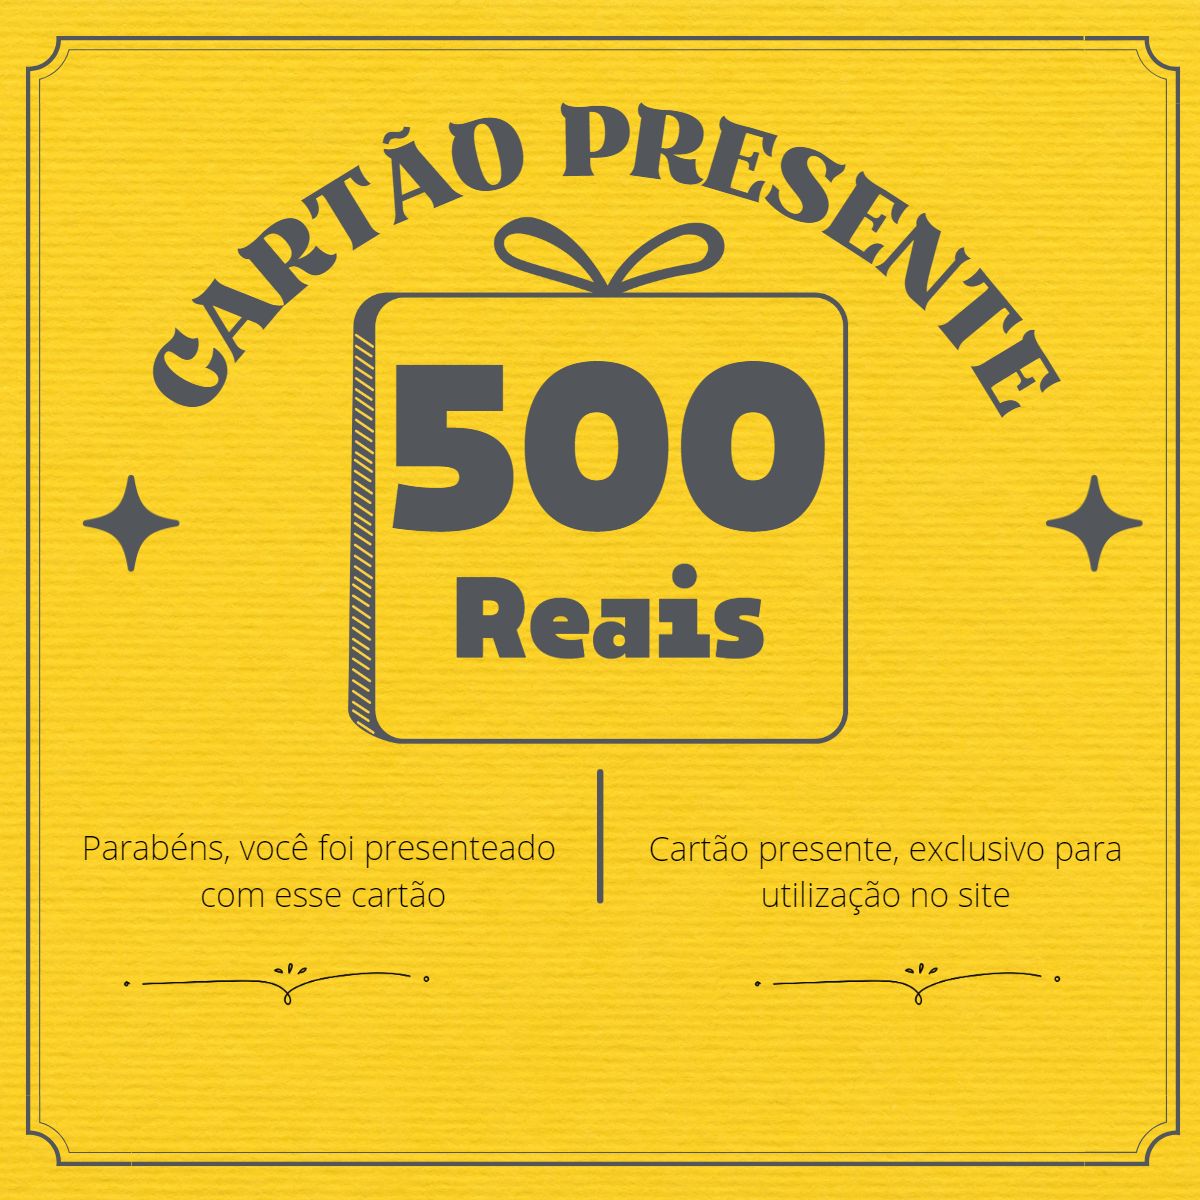 Cartão-Presente CIMO - R$ 500,00